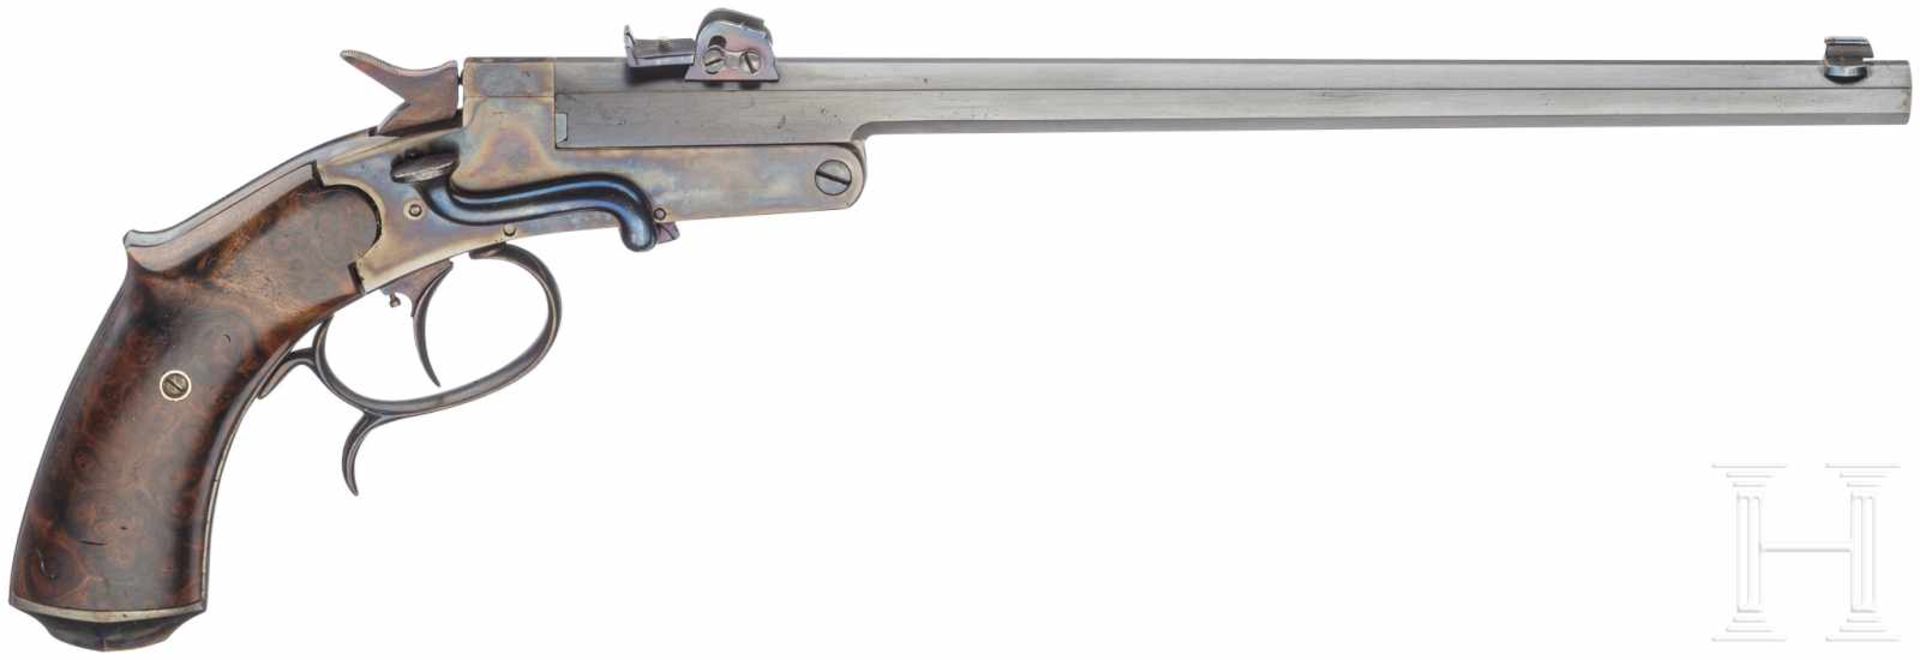 Kipplauf-Scheibenpistole System Devillers, Lüttich, um 1890< - Bild 2 aus 2